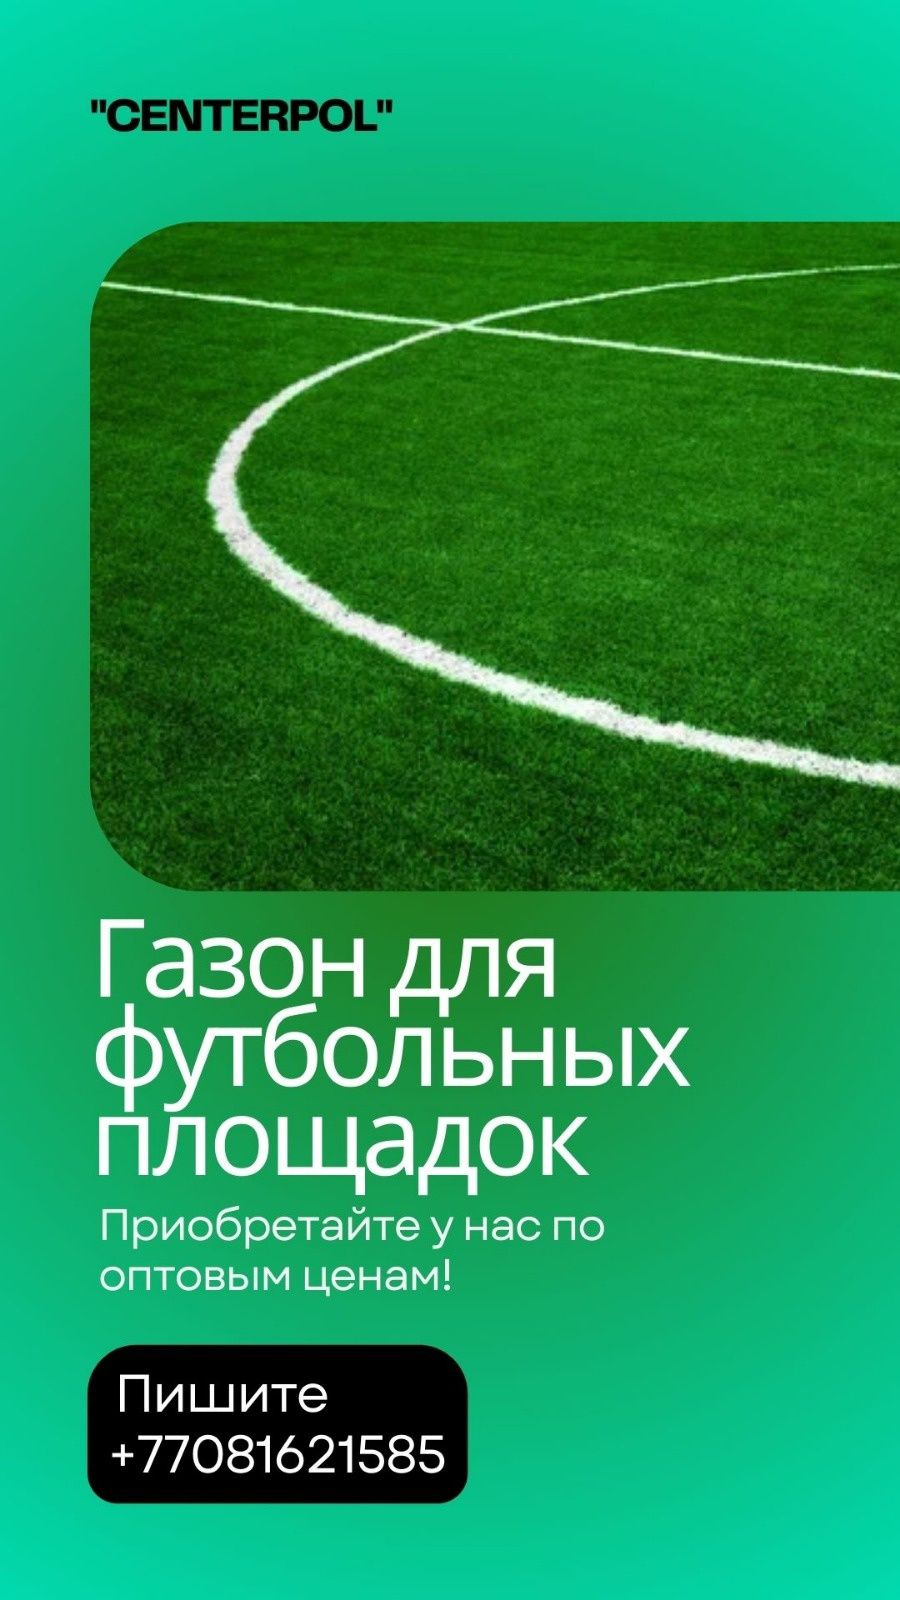 Искусственный газон 40мм, футбольный газон